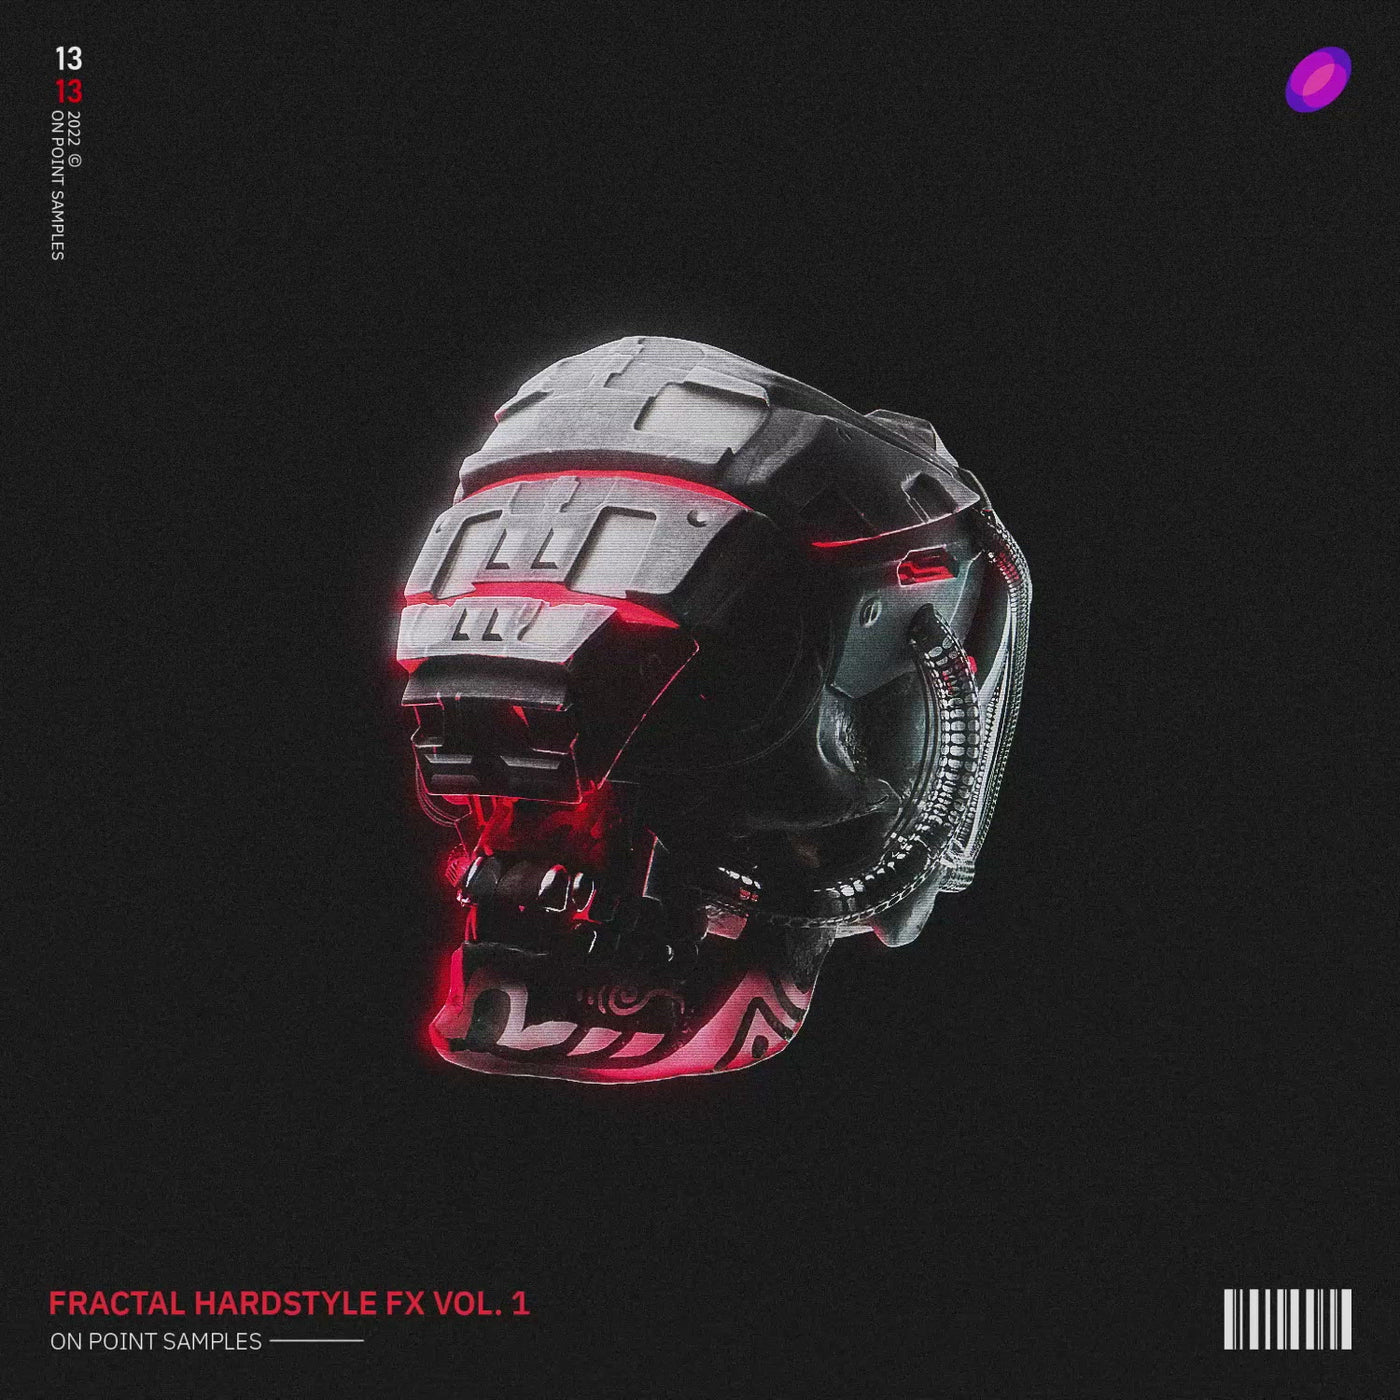 Fractal Hardstyle FX Vol. 1